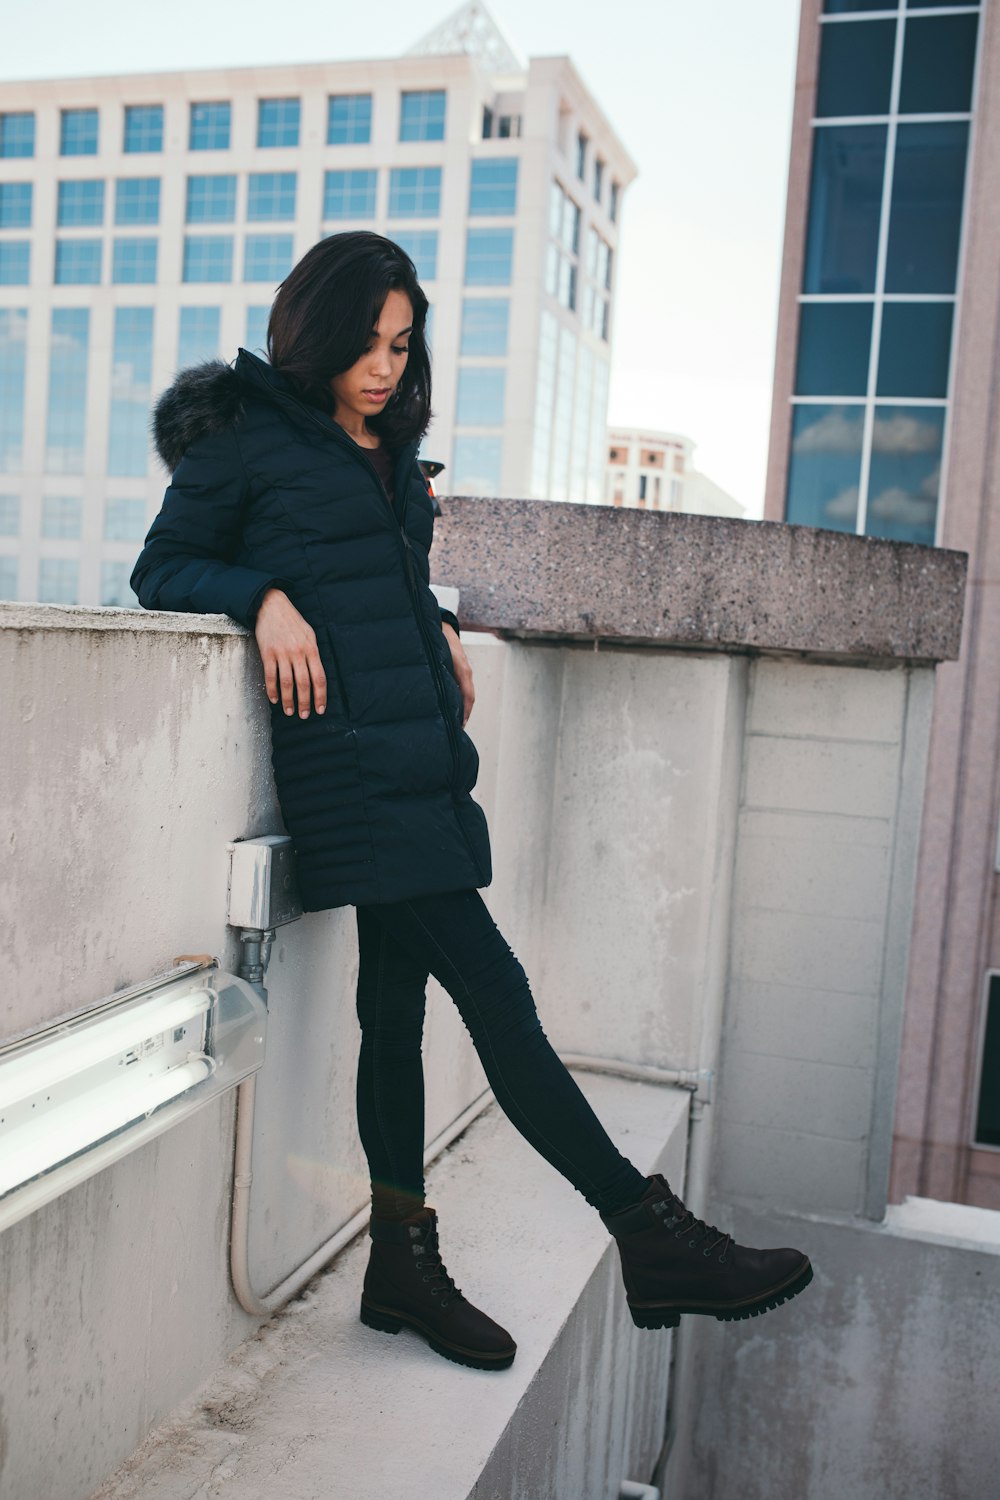 Frau trägt schwarzen Parka-Mantel, während sie sich an eine graue Betonwand lehnt